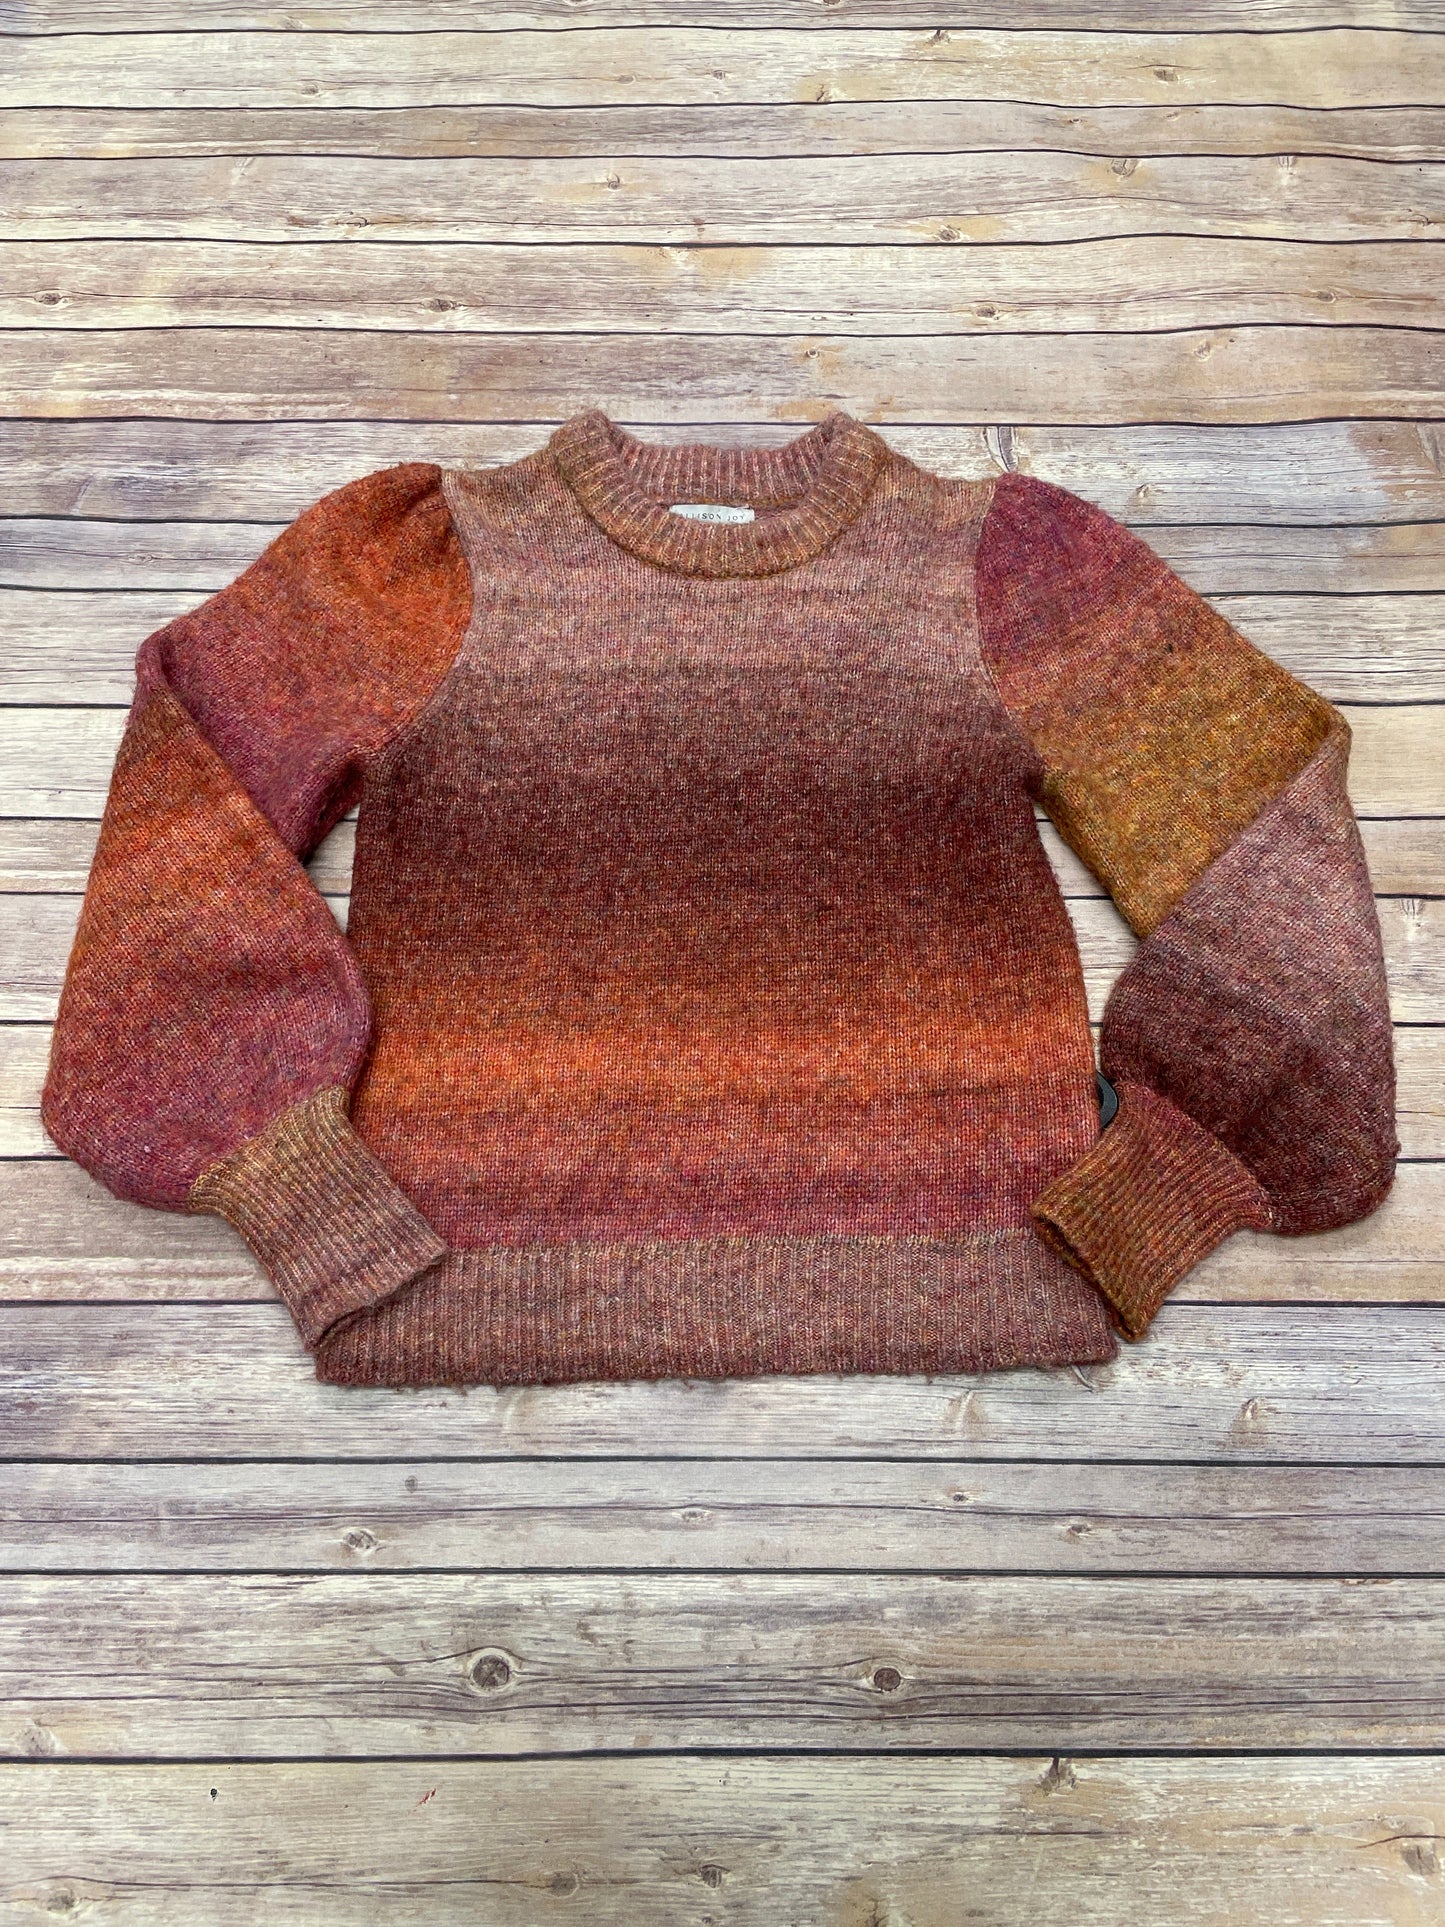 Sweater By Allison Joy  Size: Xs